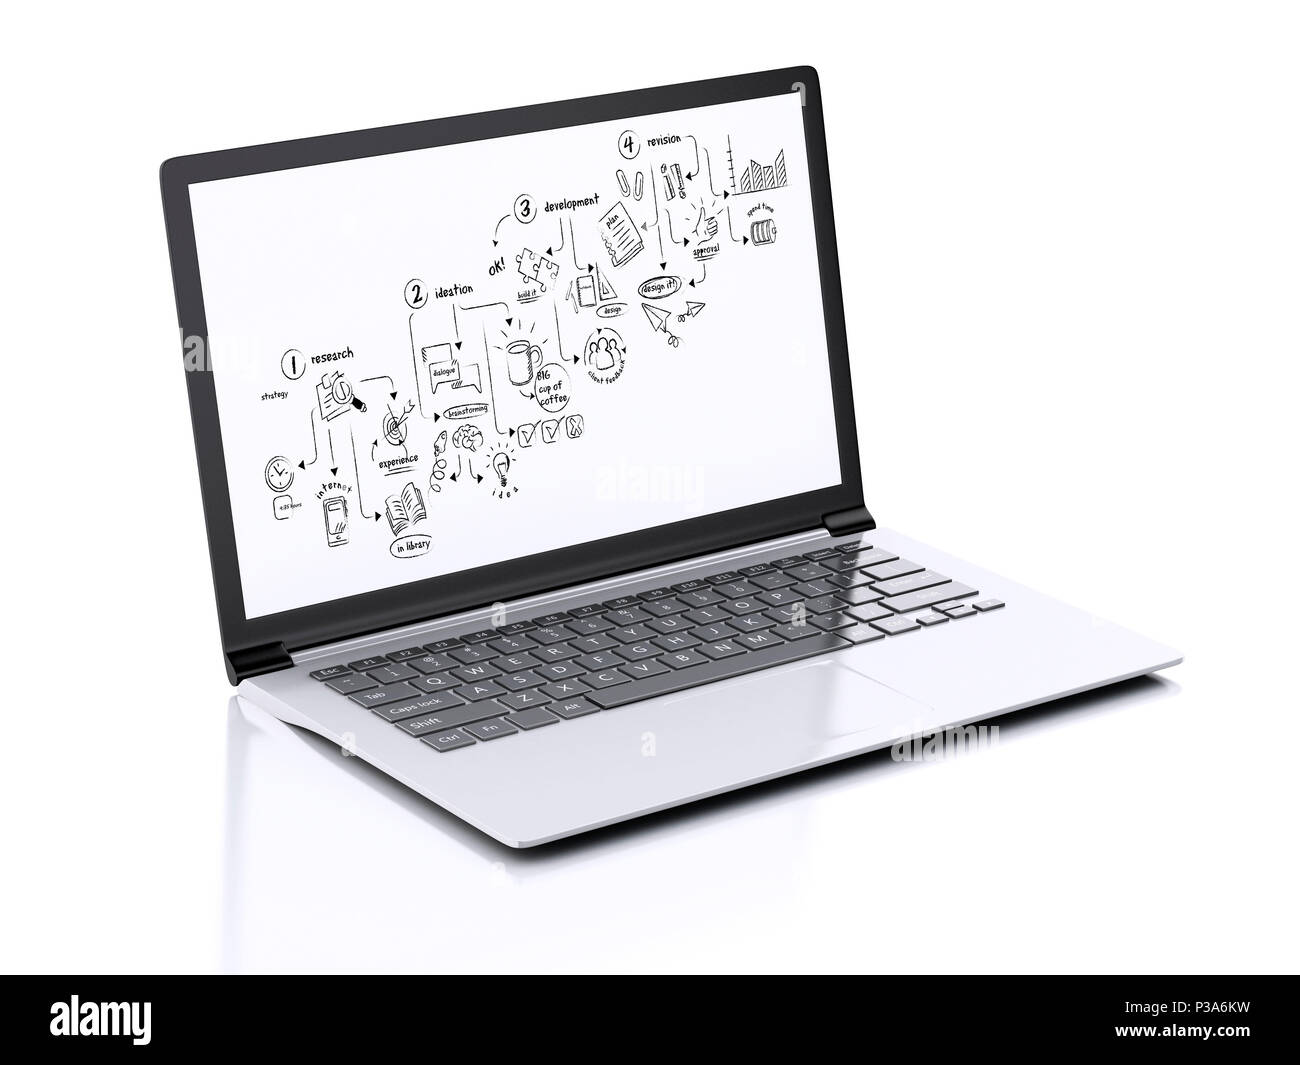 Immagine del laptop moderno con processo creativo disegna sullo schermo. 3d'illustrazione su sfondo bianco Foto Stock